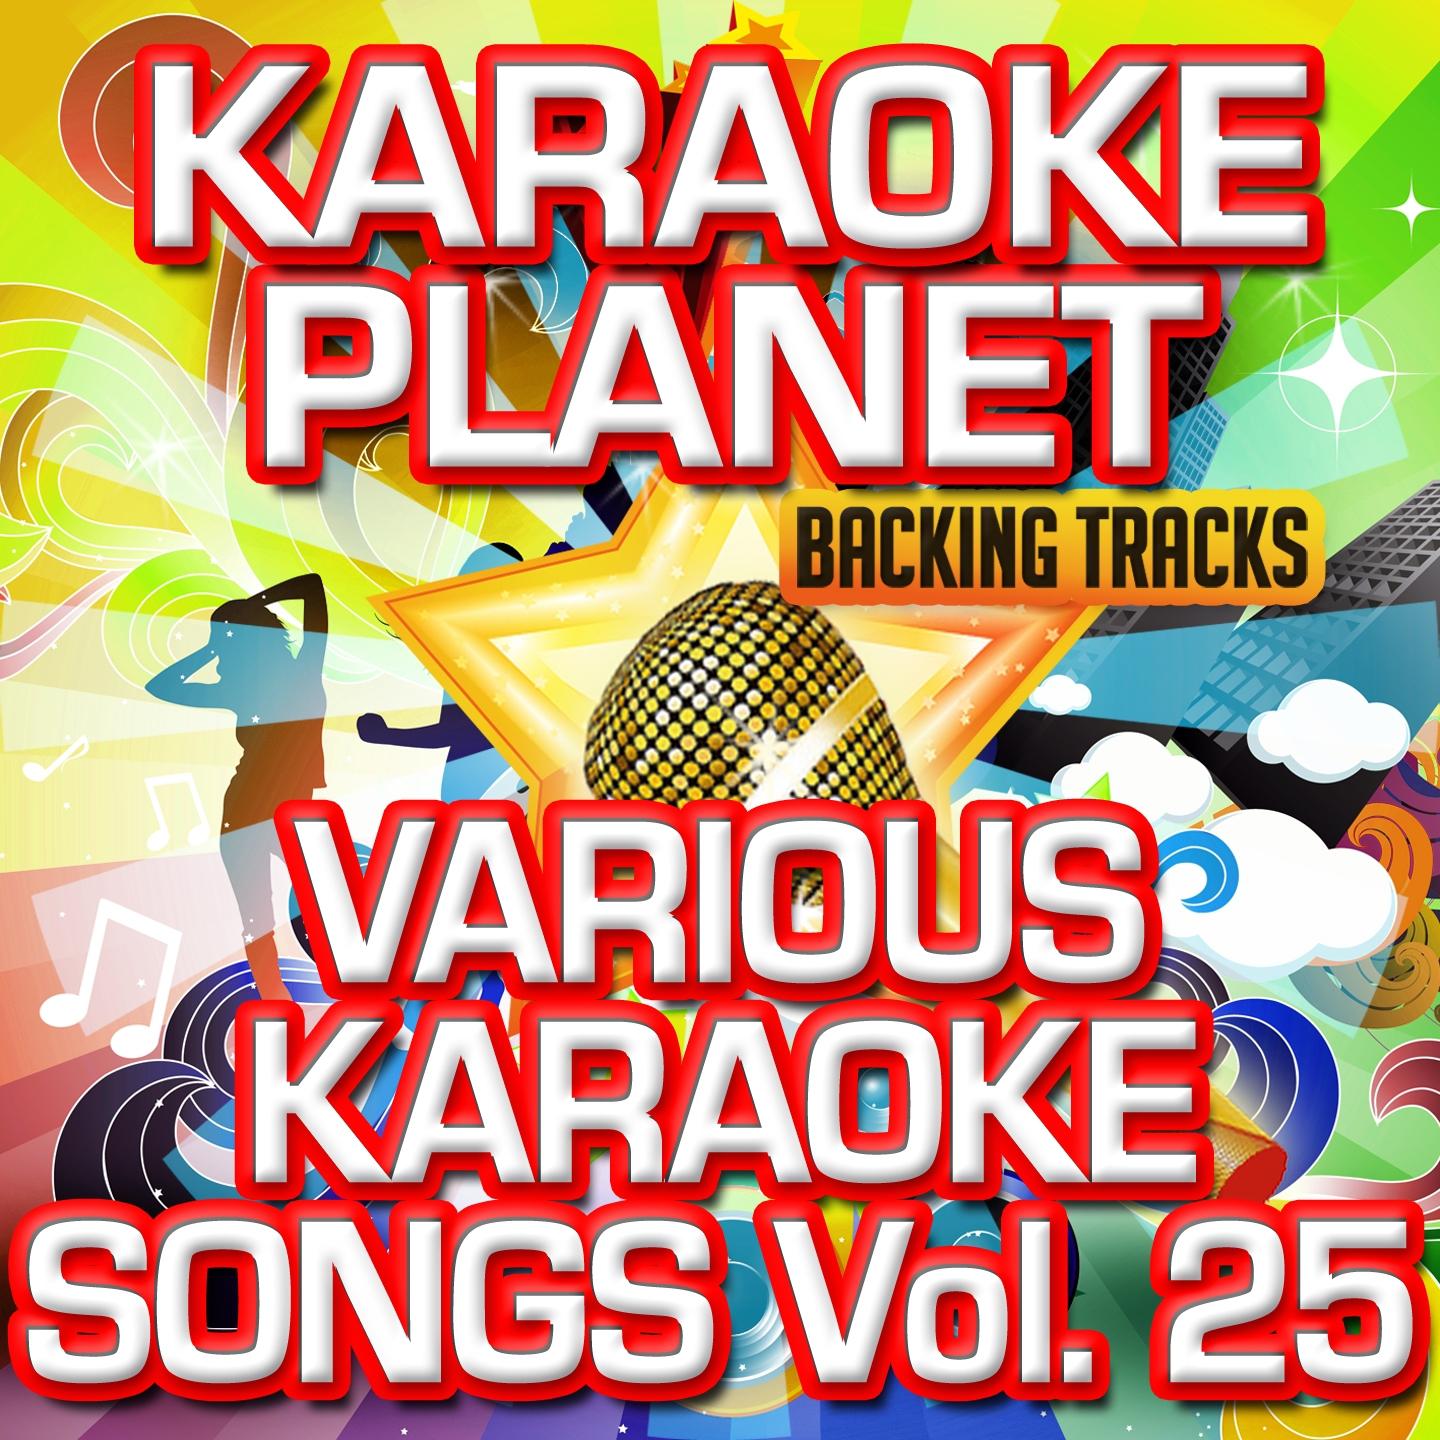 Various Karaoke Songs, Vol. 25